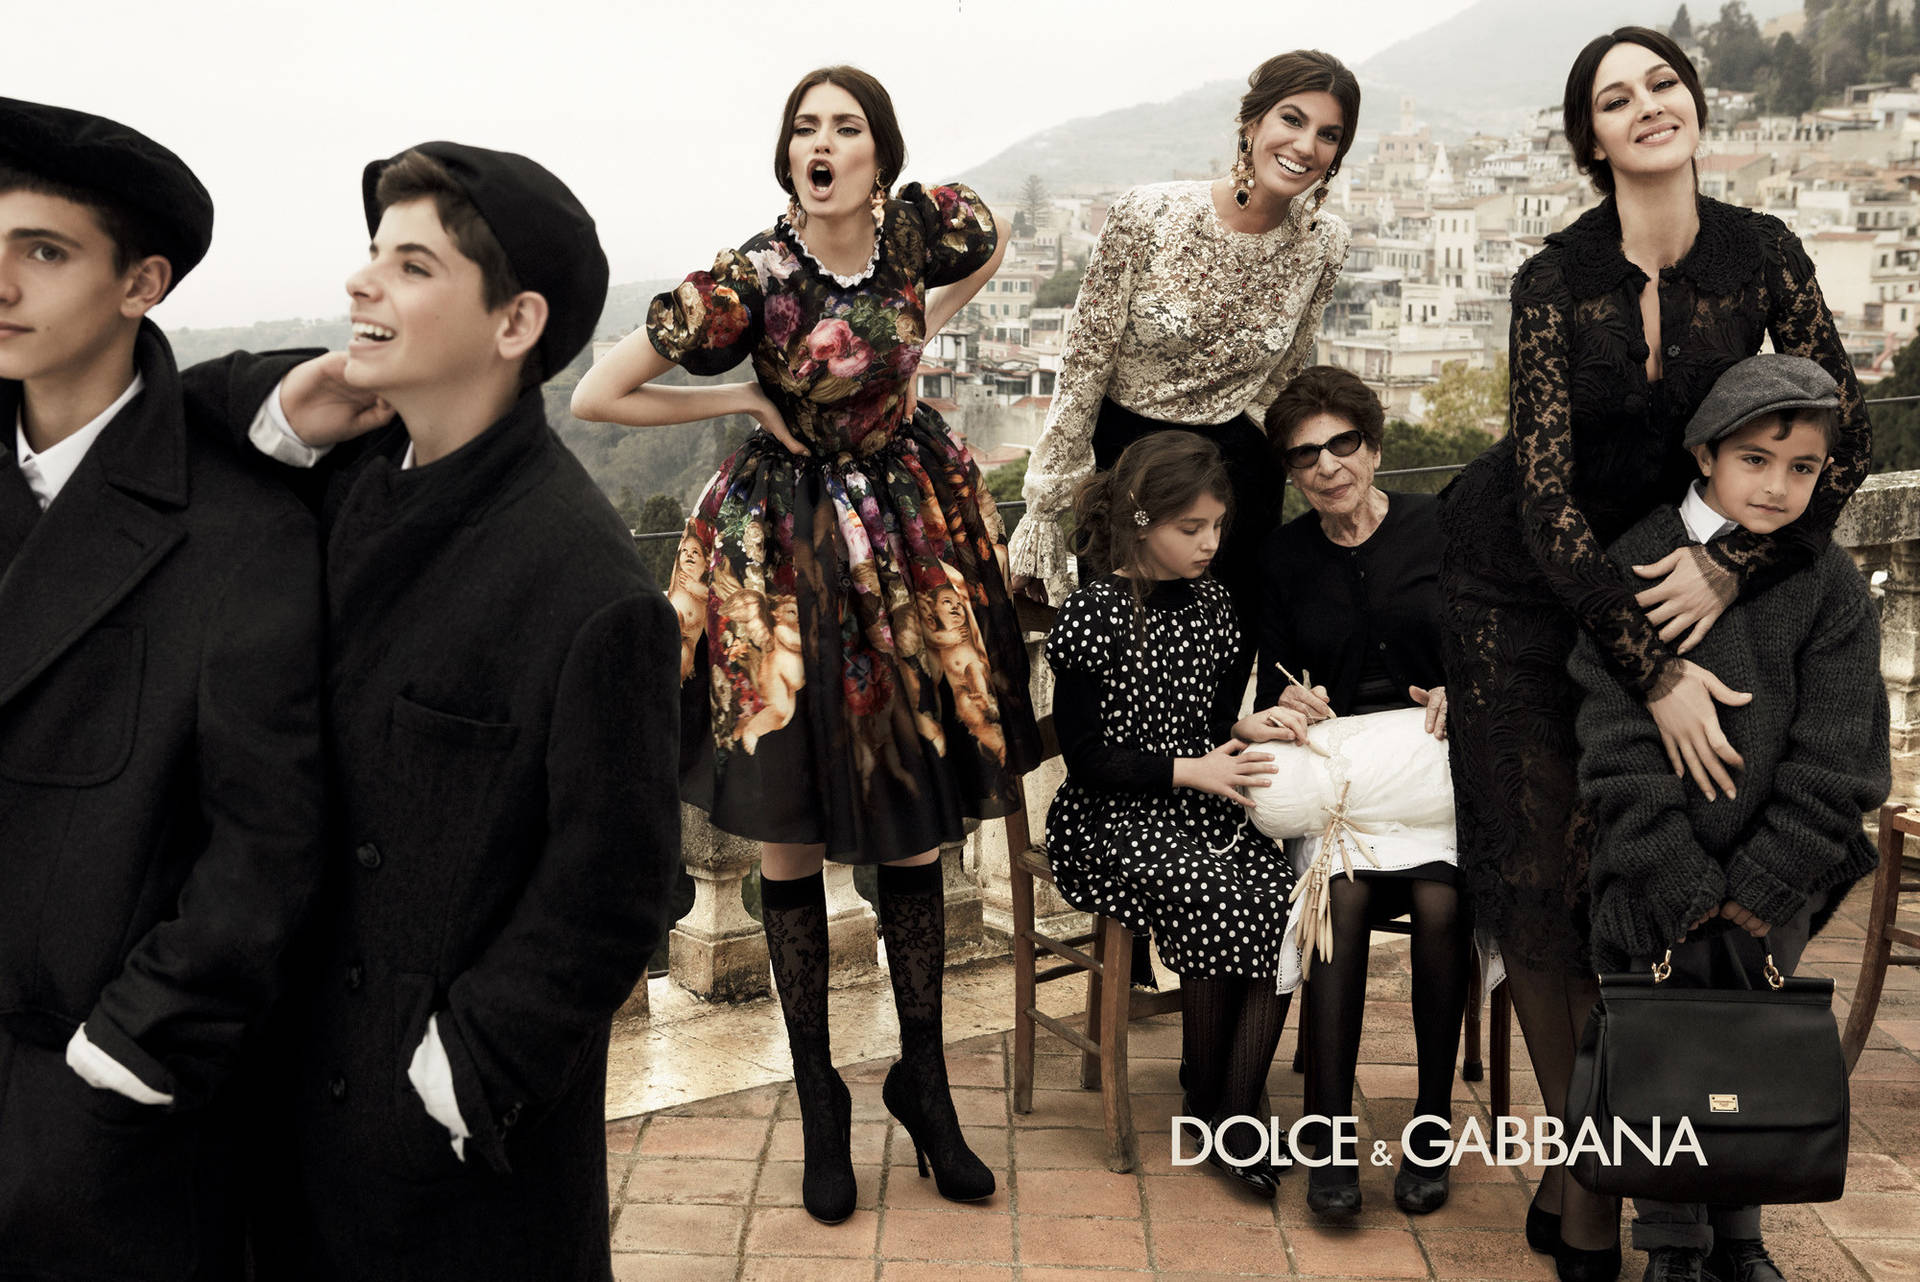 Dolce And Gabbana-modeller udenfor i sort tøj Wallpaper